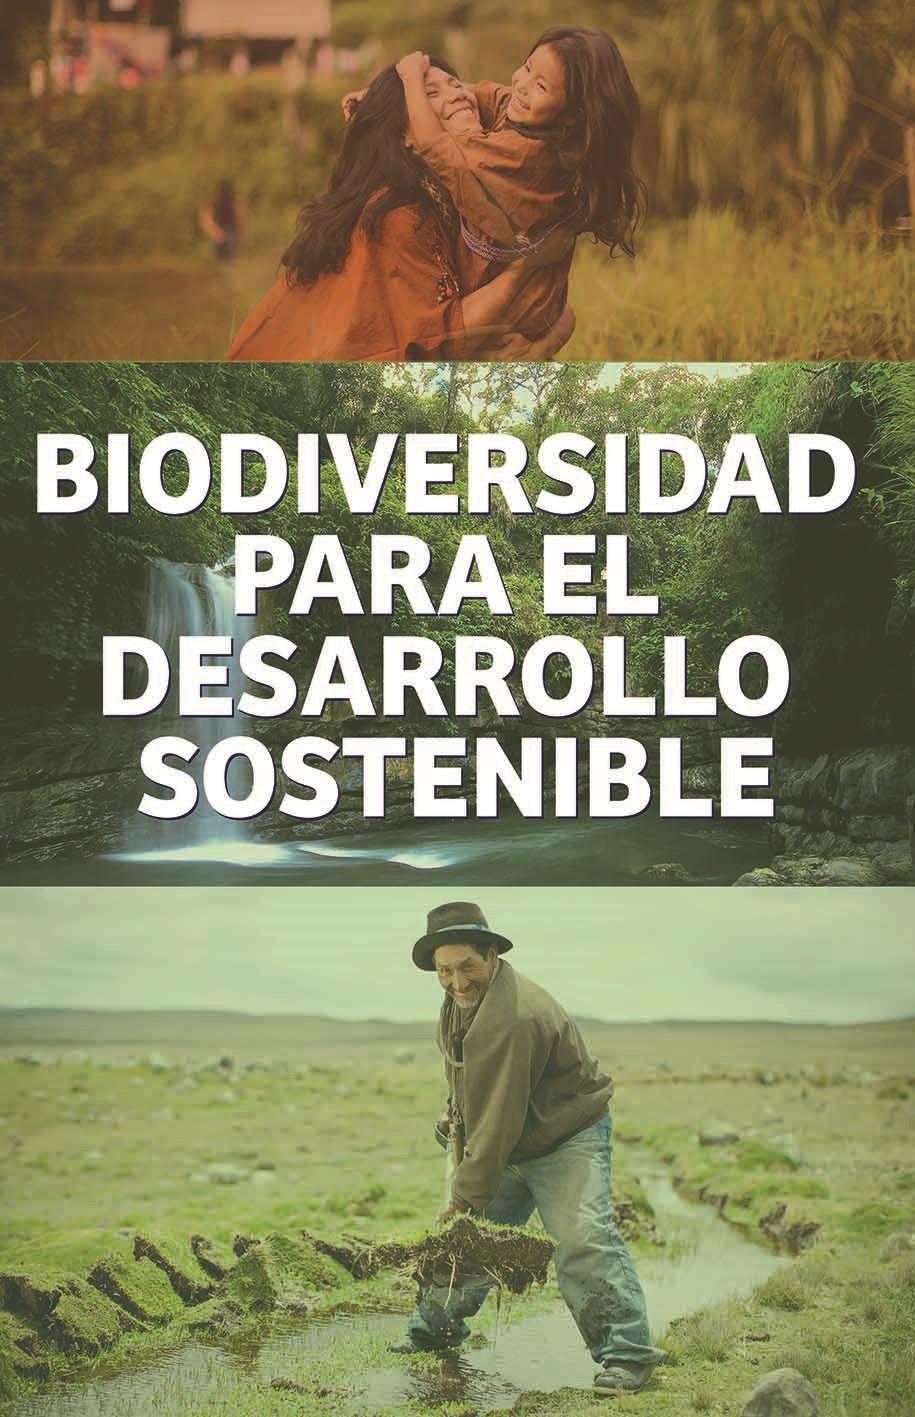 Los recursos de la biodiversidad son el mayor capital con que cuenta en el Perú de cara al futuro, y serán la base para su desarrollo en las próximas generaciones.